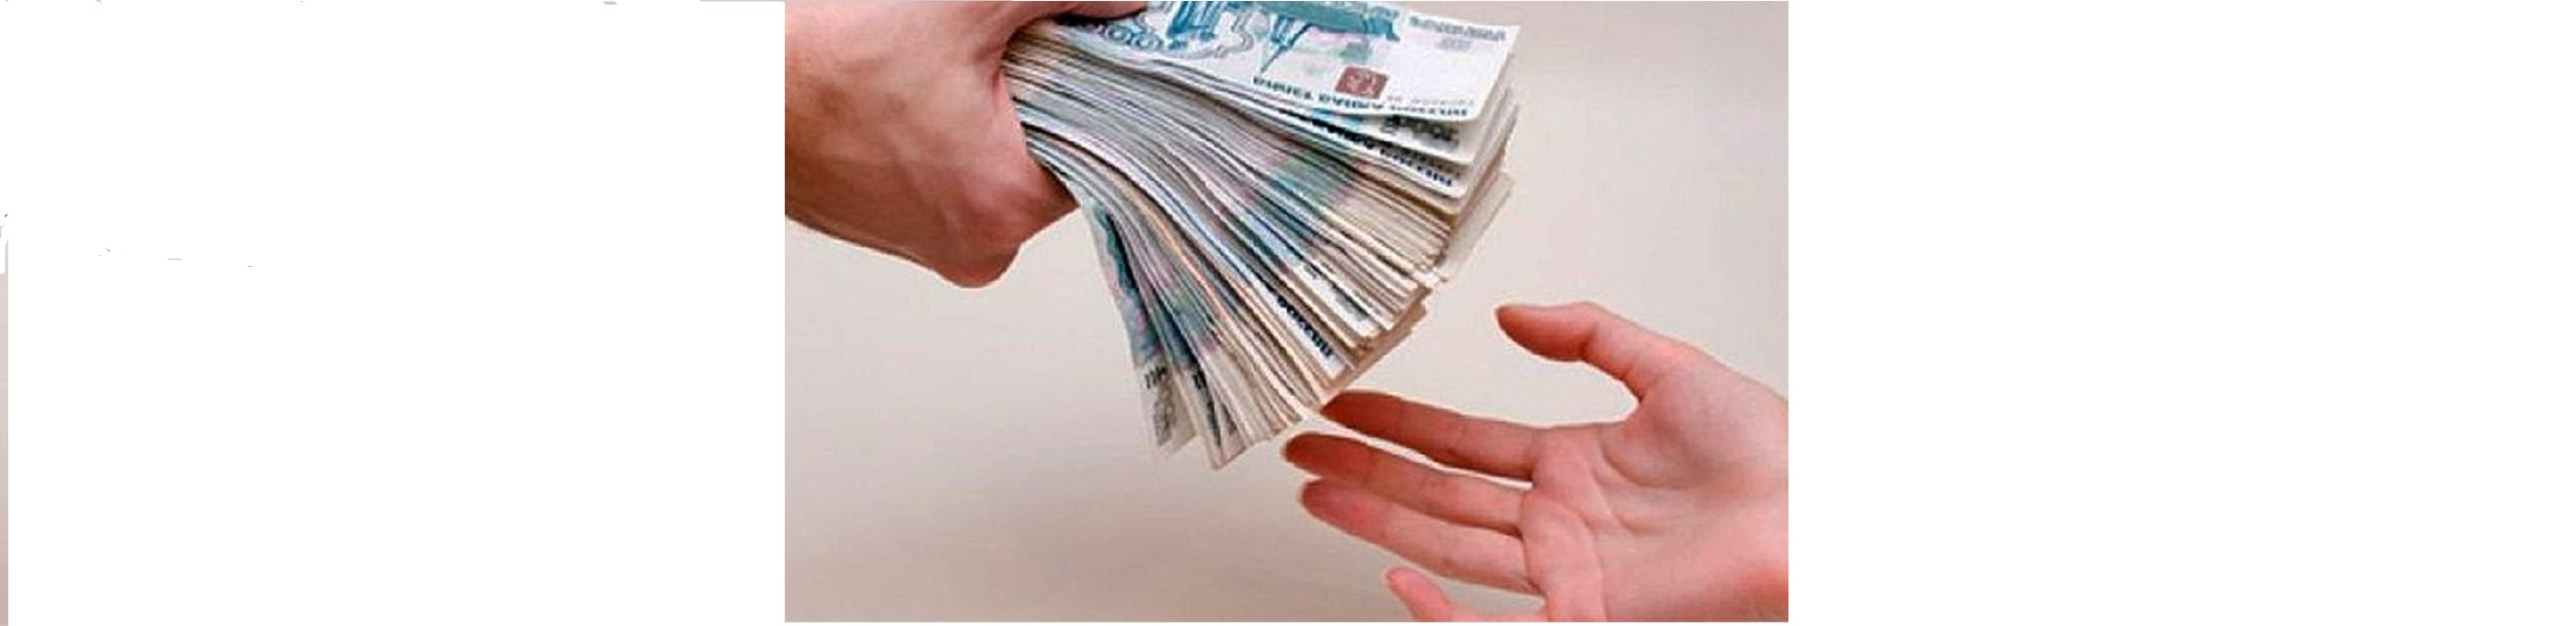 По данным крупнейших банков России в стране все чаще оформляют кредиты до 500 тысяч рублей.